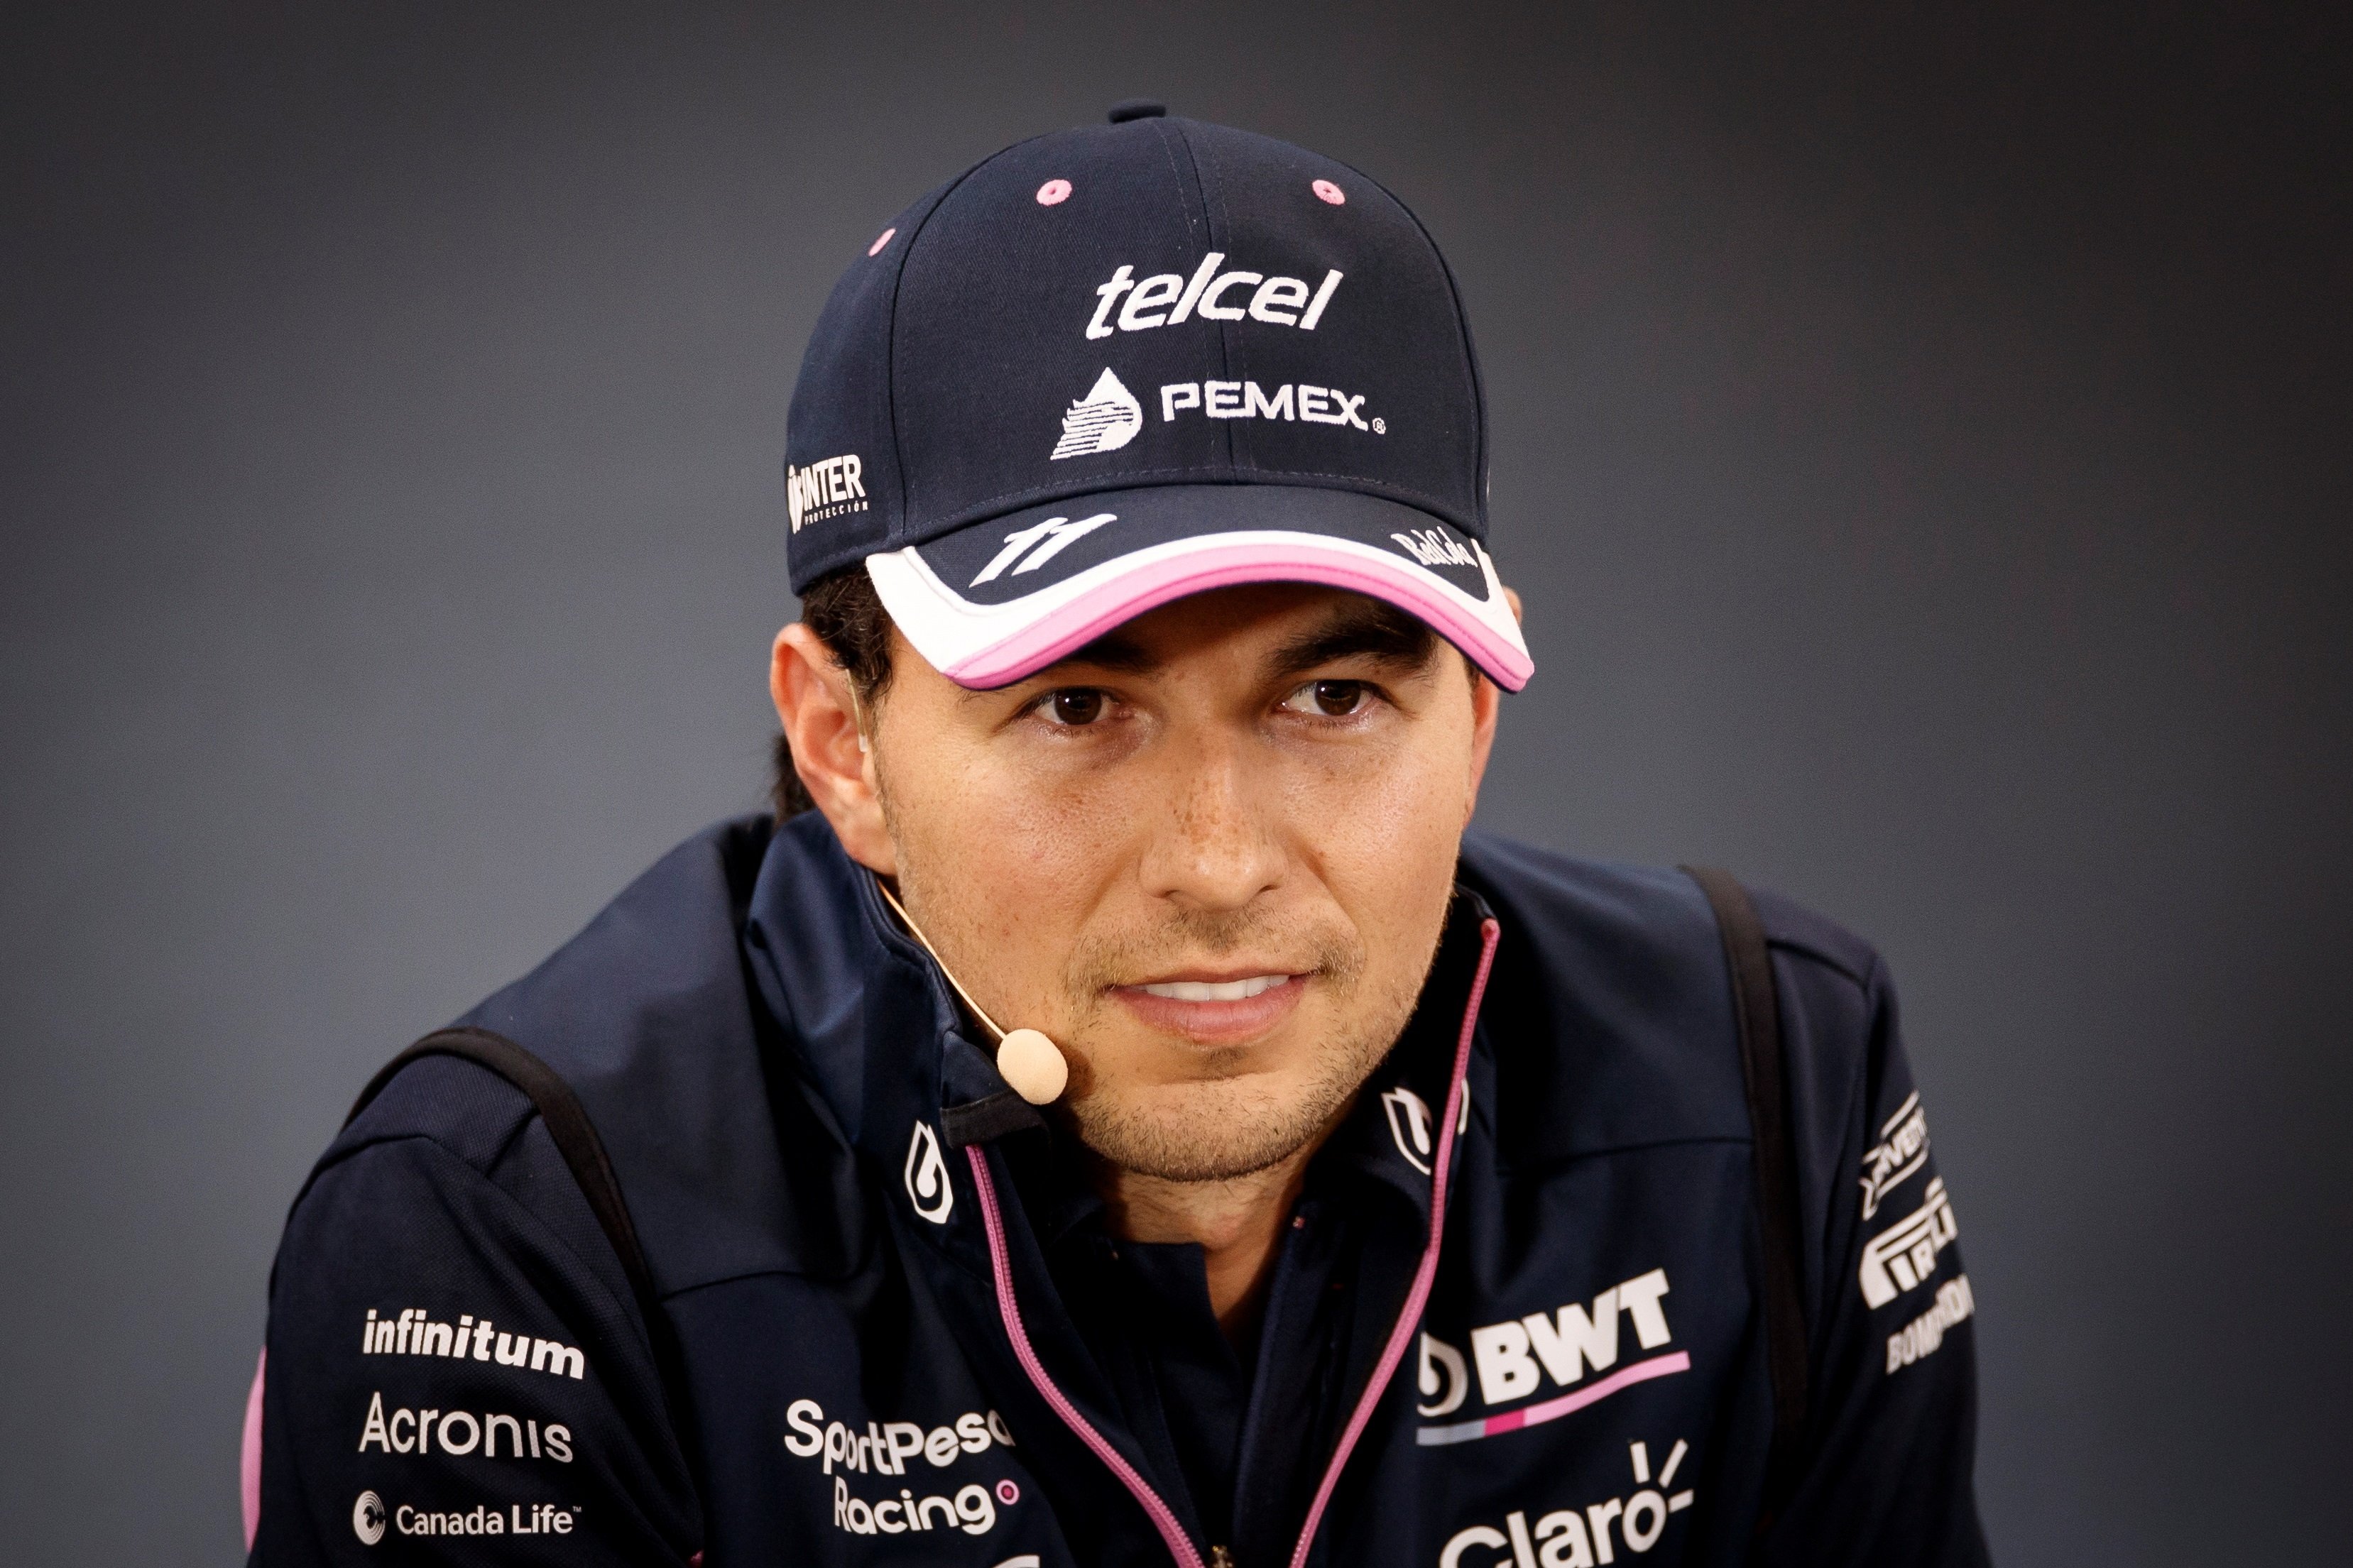 El piloto de F1 Checo Pérez da positivo por coronavirus y se queda sin correr